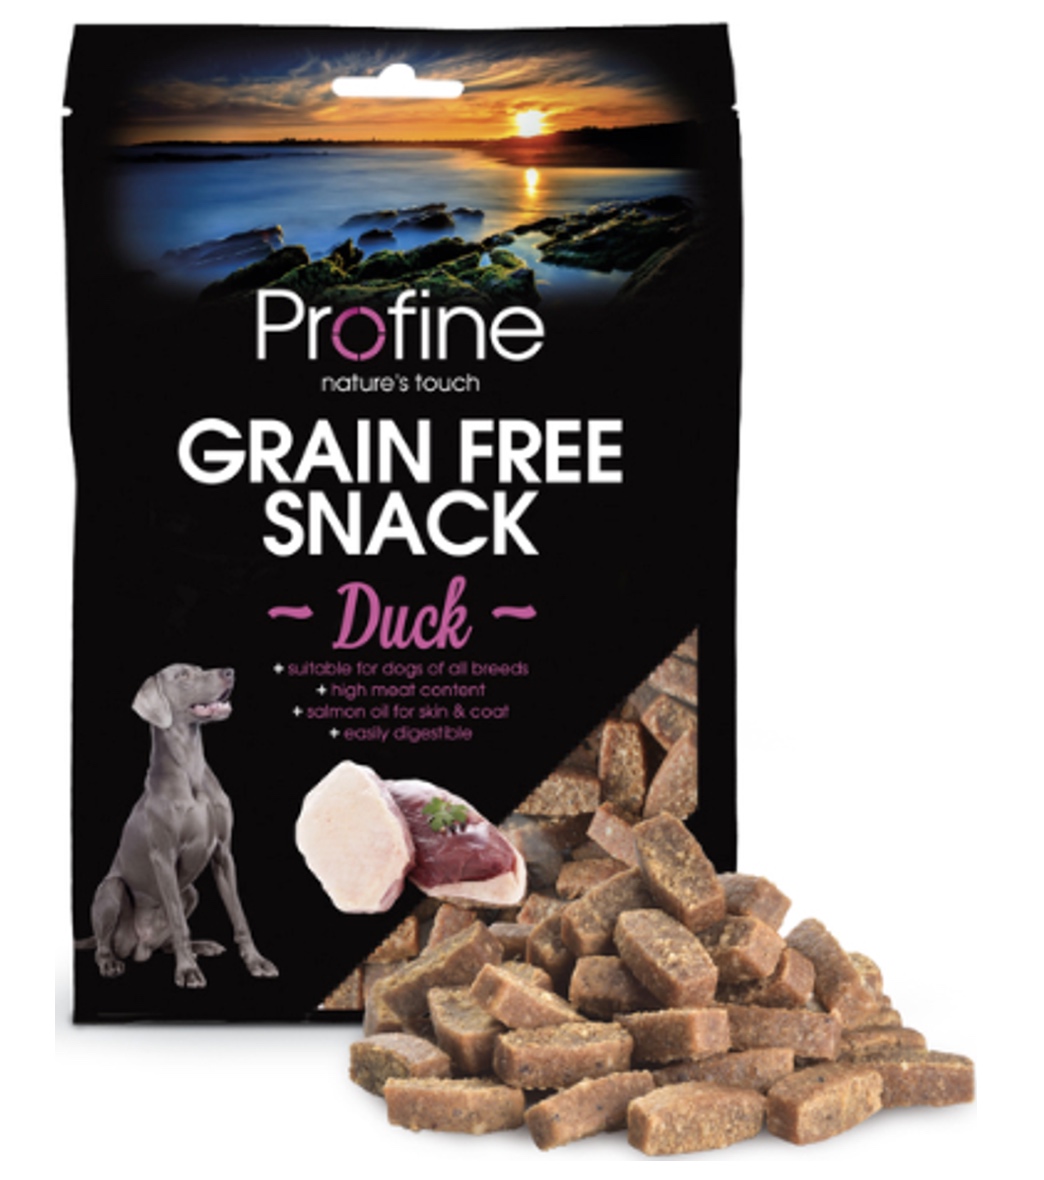 Profine Grain Free Snack - And